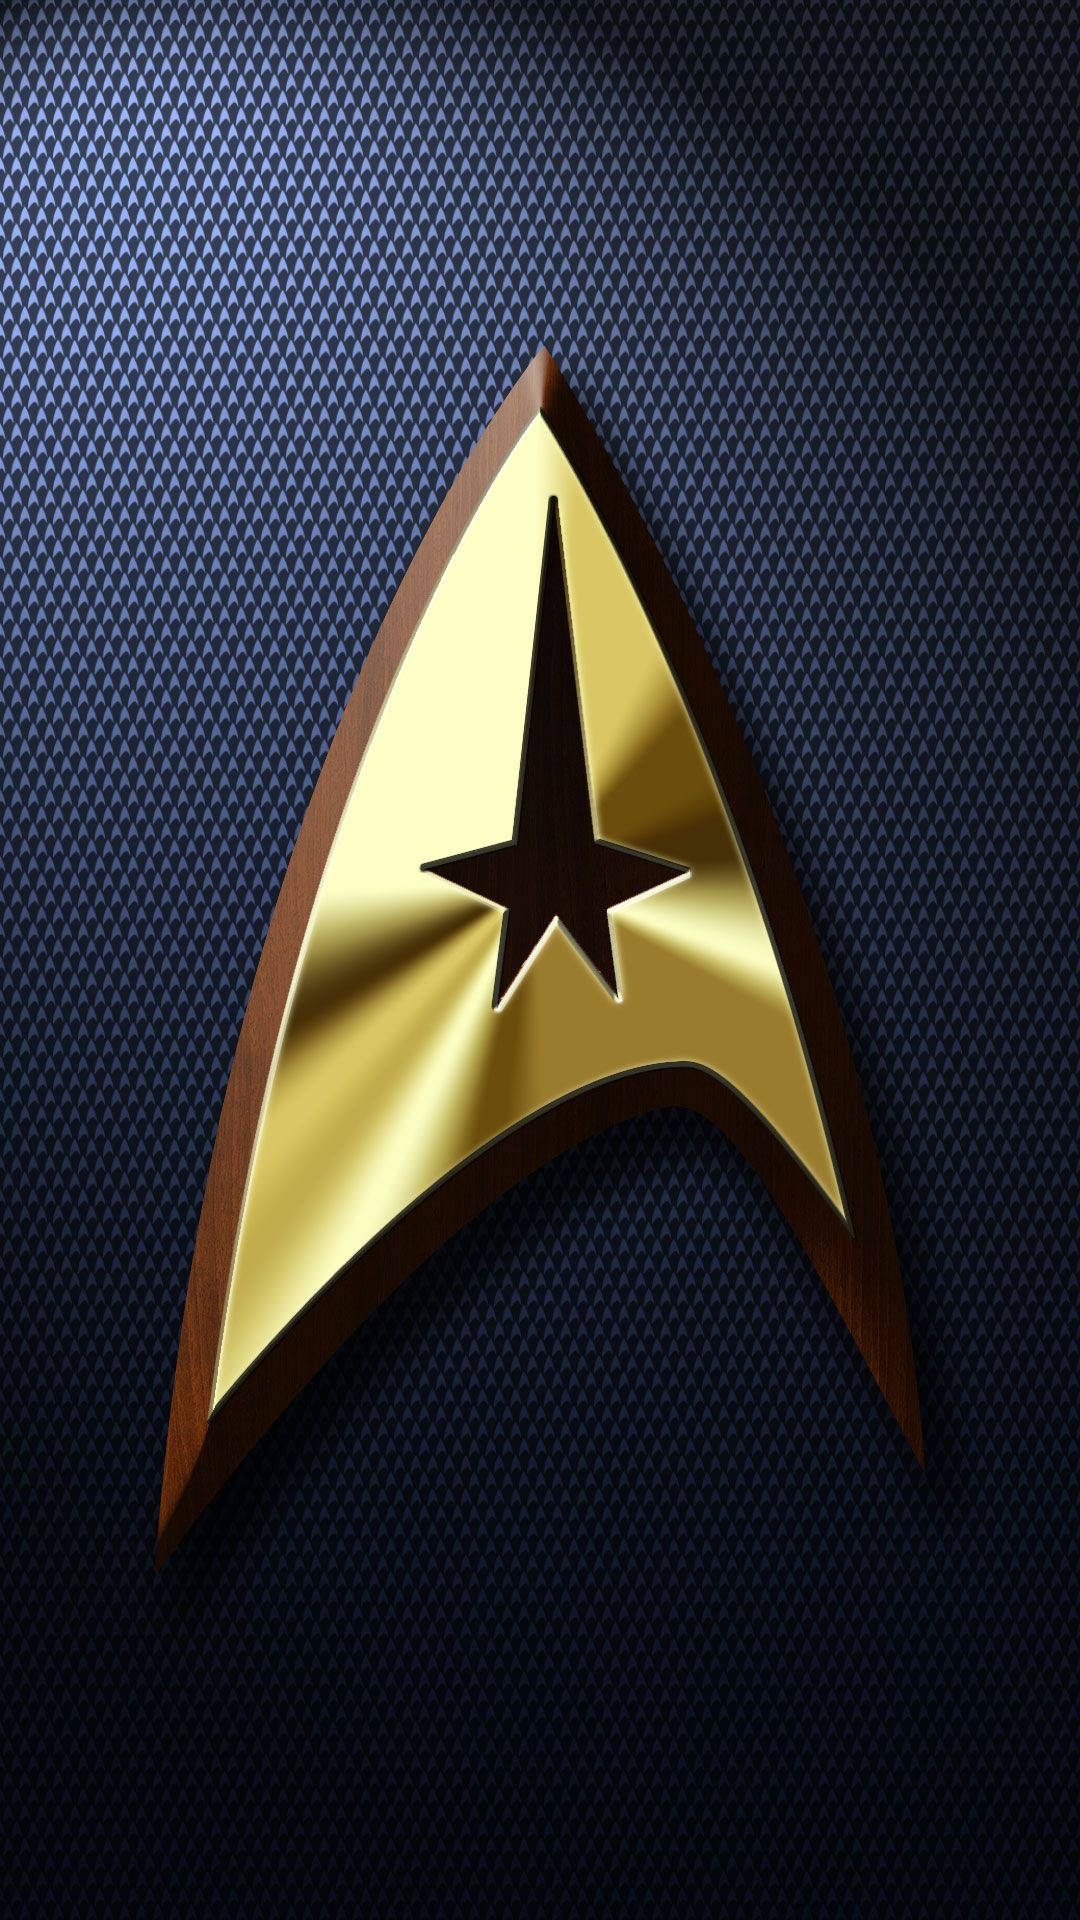 Star Trek Iphone Wallpaper Images